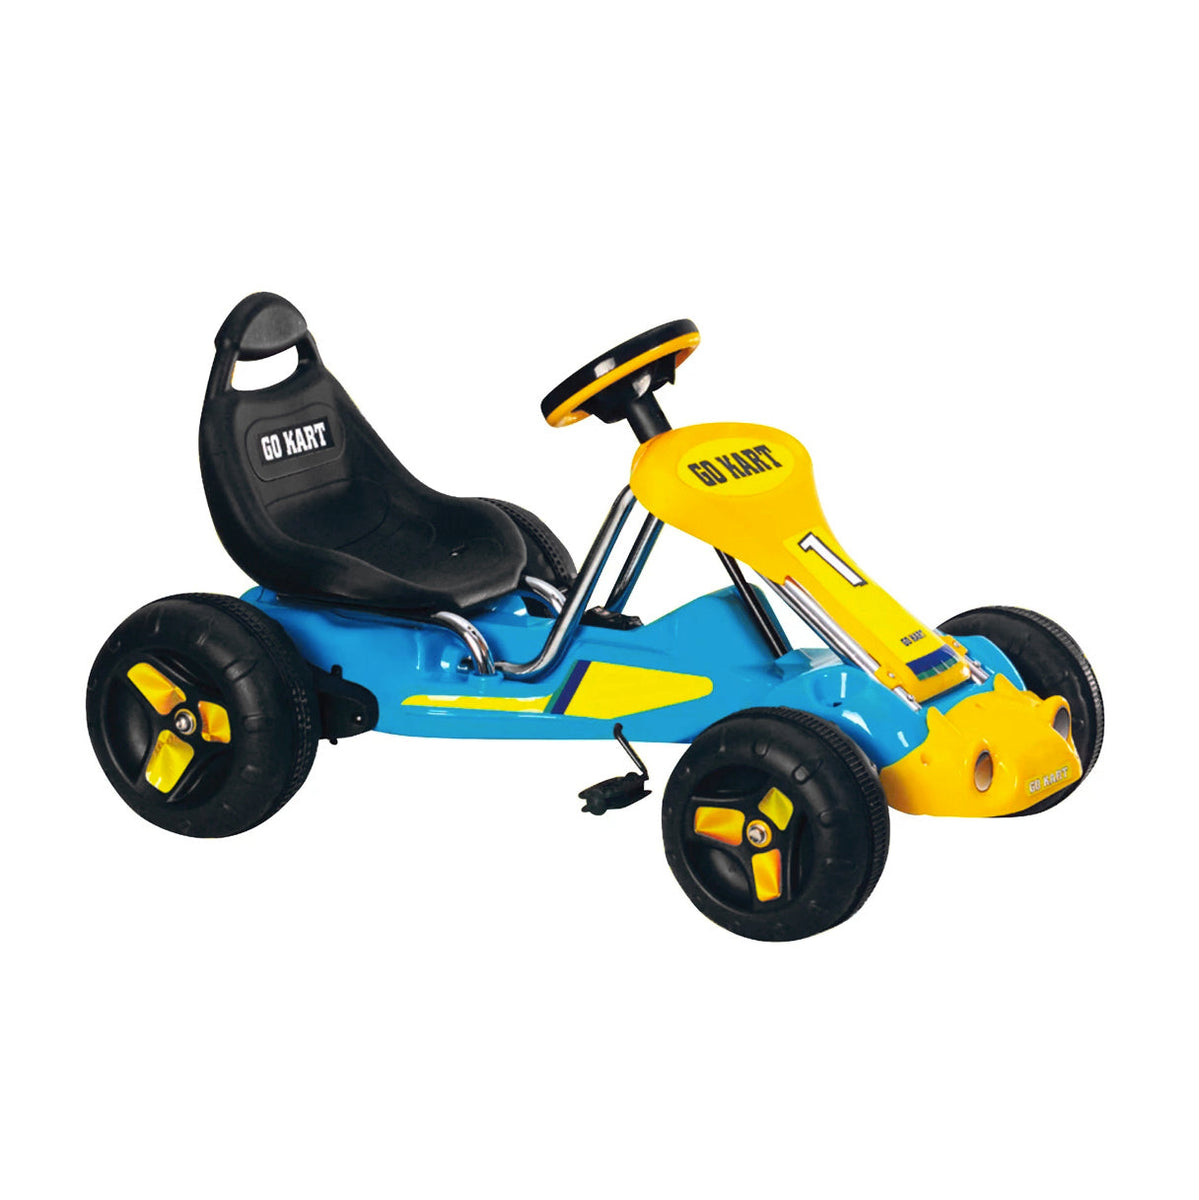 Pedal Powered Go-Kart for Children (Red) Ride & Steer/ 4-Wheel Vehicle